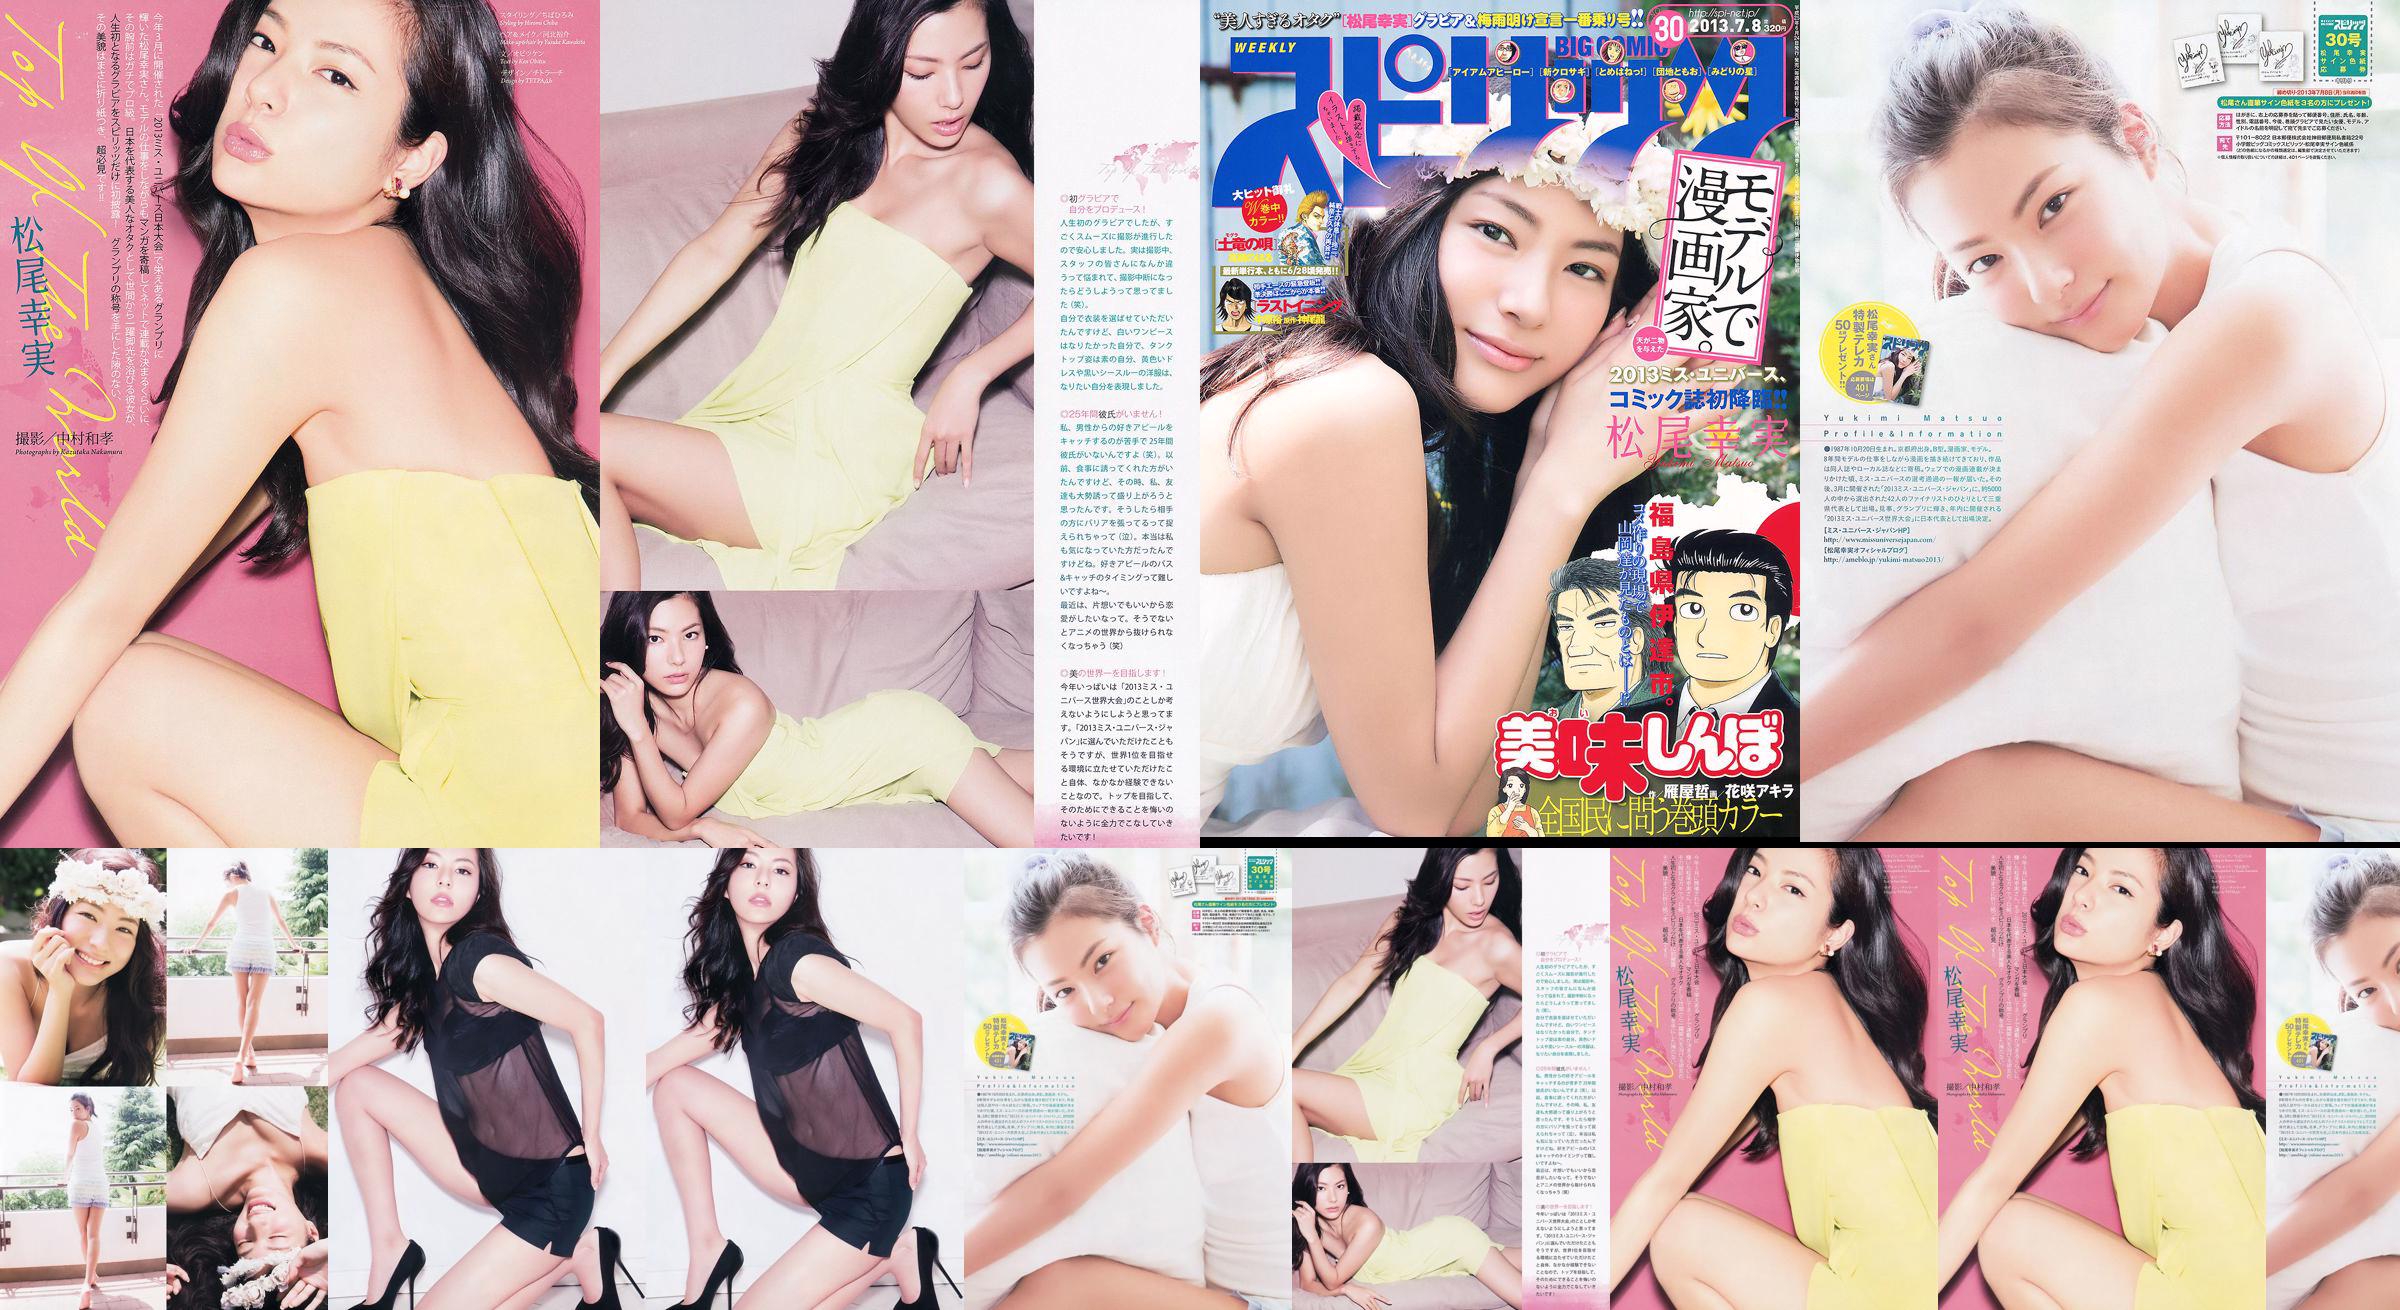 [Weekly Big Comic Spirits] Komi Matsuo 2013 No.30 Photo Magazine No.442fb1 Pagina 2